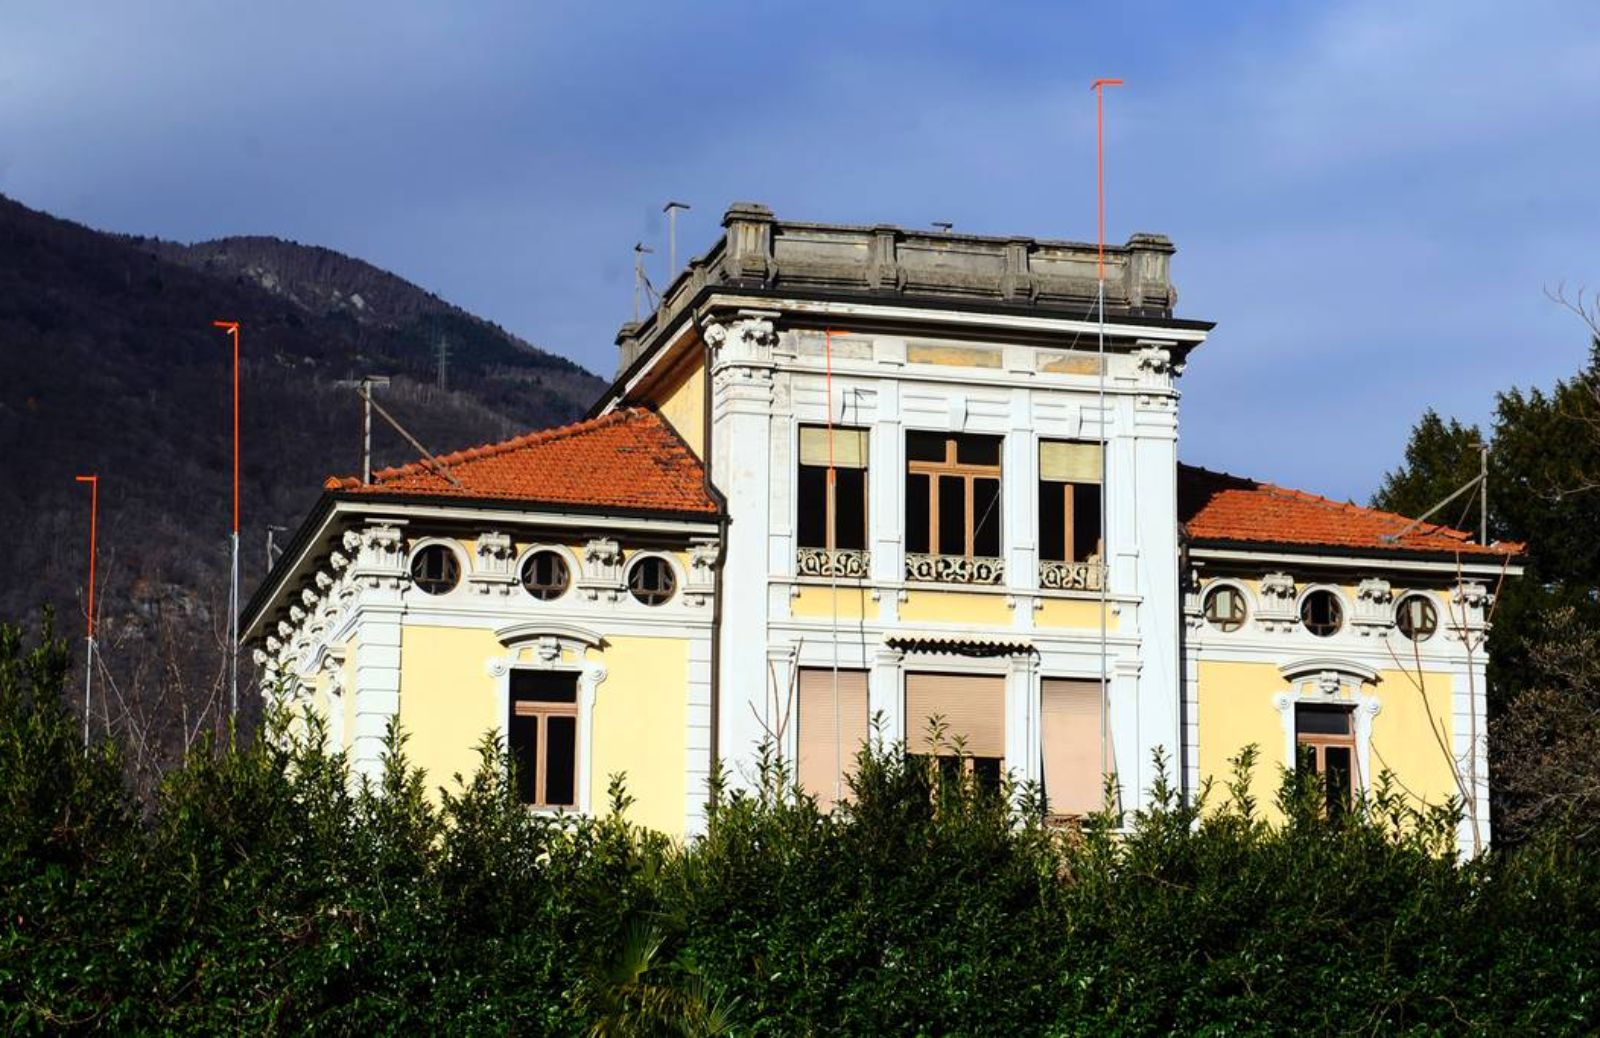 Lavori estremi: spostata villa di 1450 tonnellate a Bellinzona